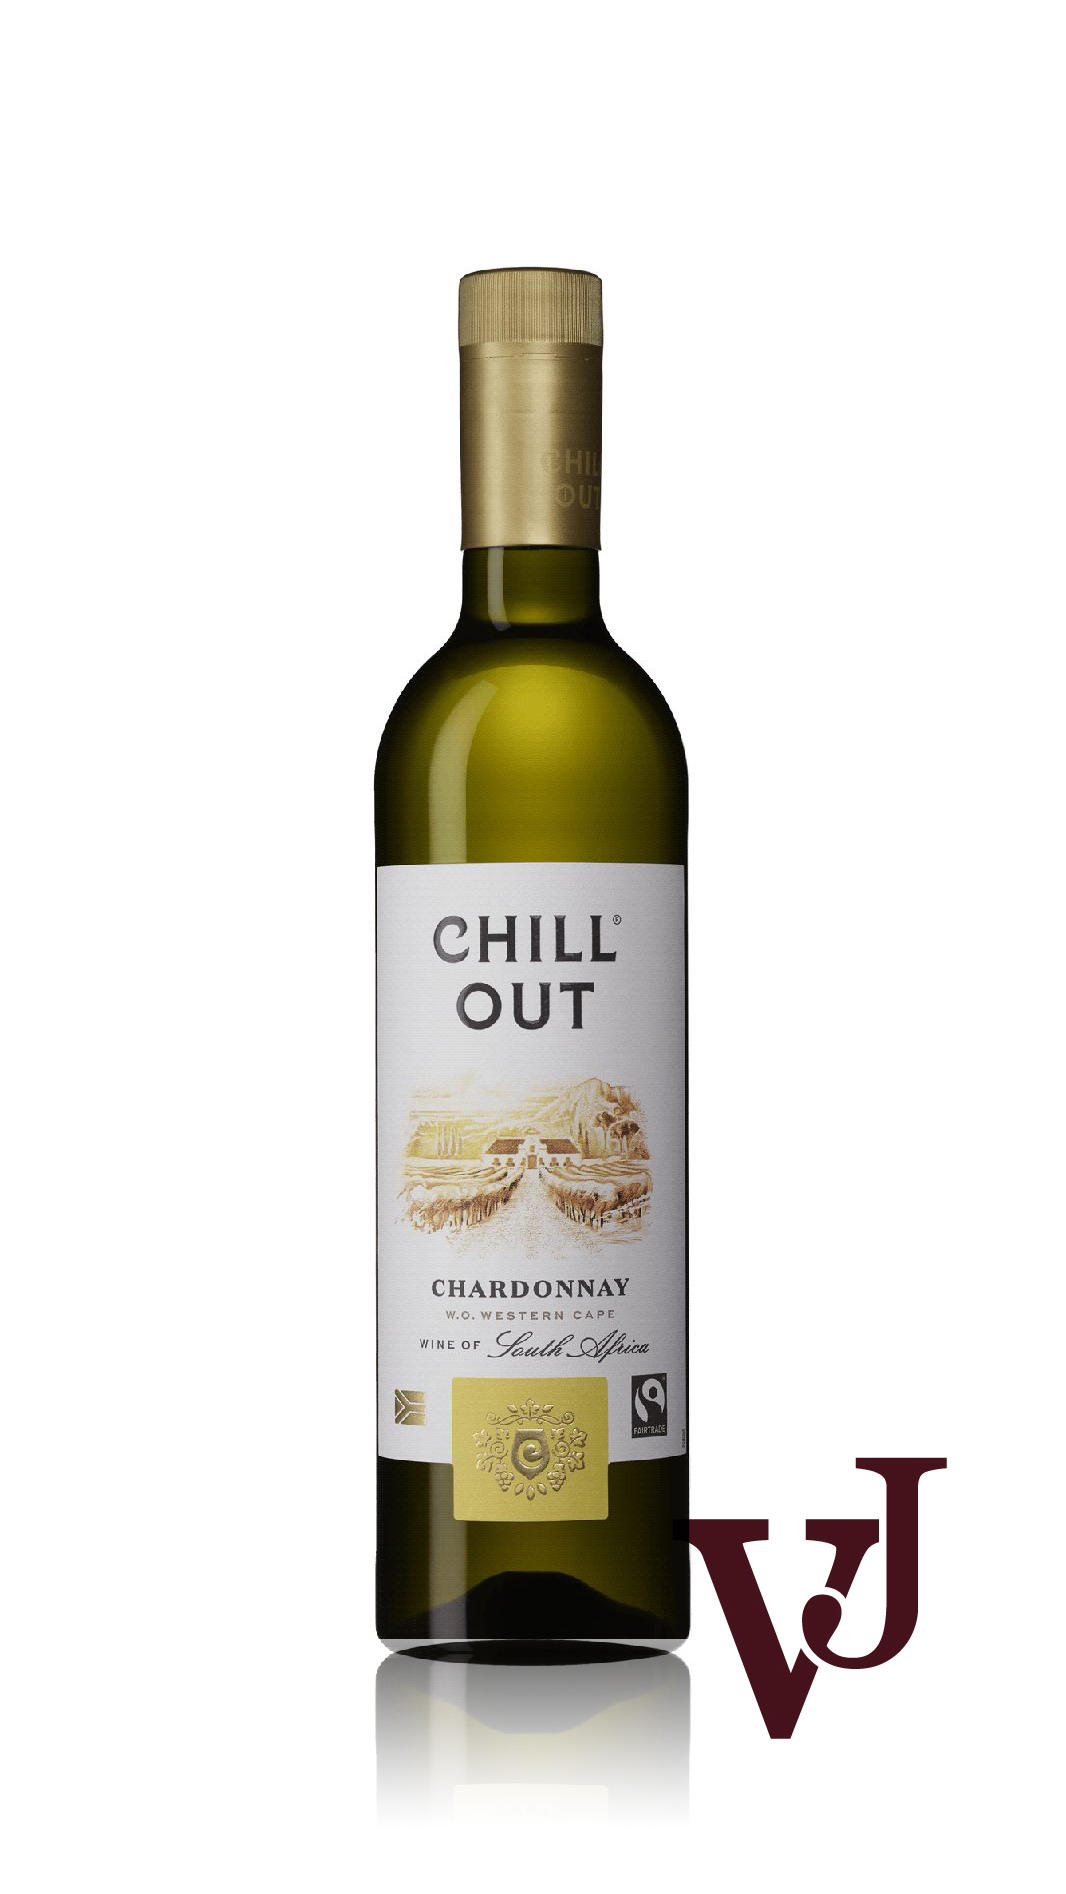 Vitt Vin - CHILL OUT Chardonnay South Africa artikel nummer 205301 från producenten Altia från området Sydafrika - Vinjournalen.se